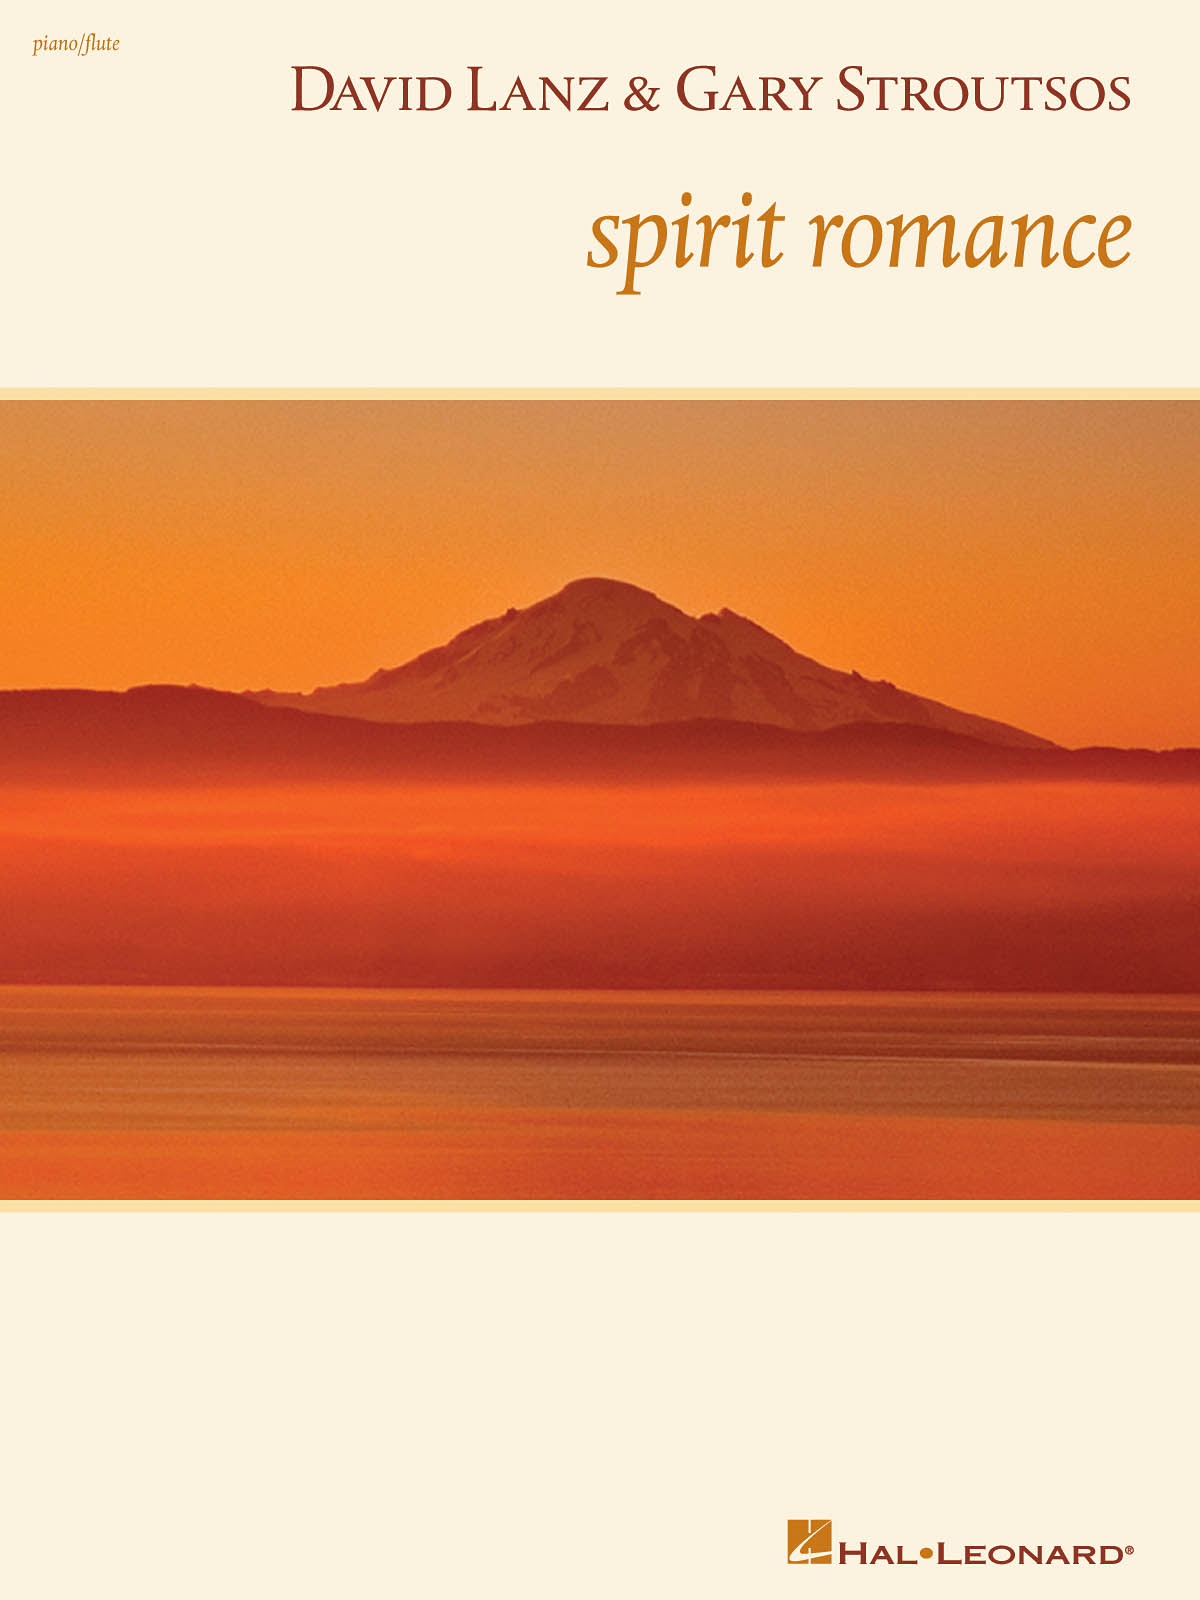 David Lanz & Gary Stroutsos – Spirit Romance